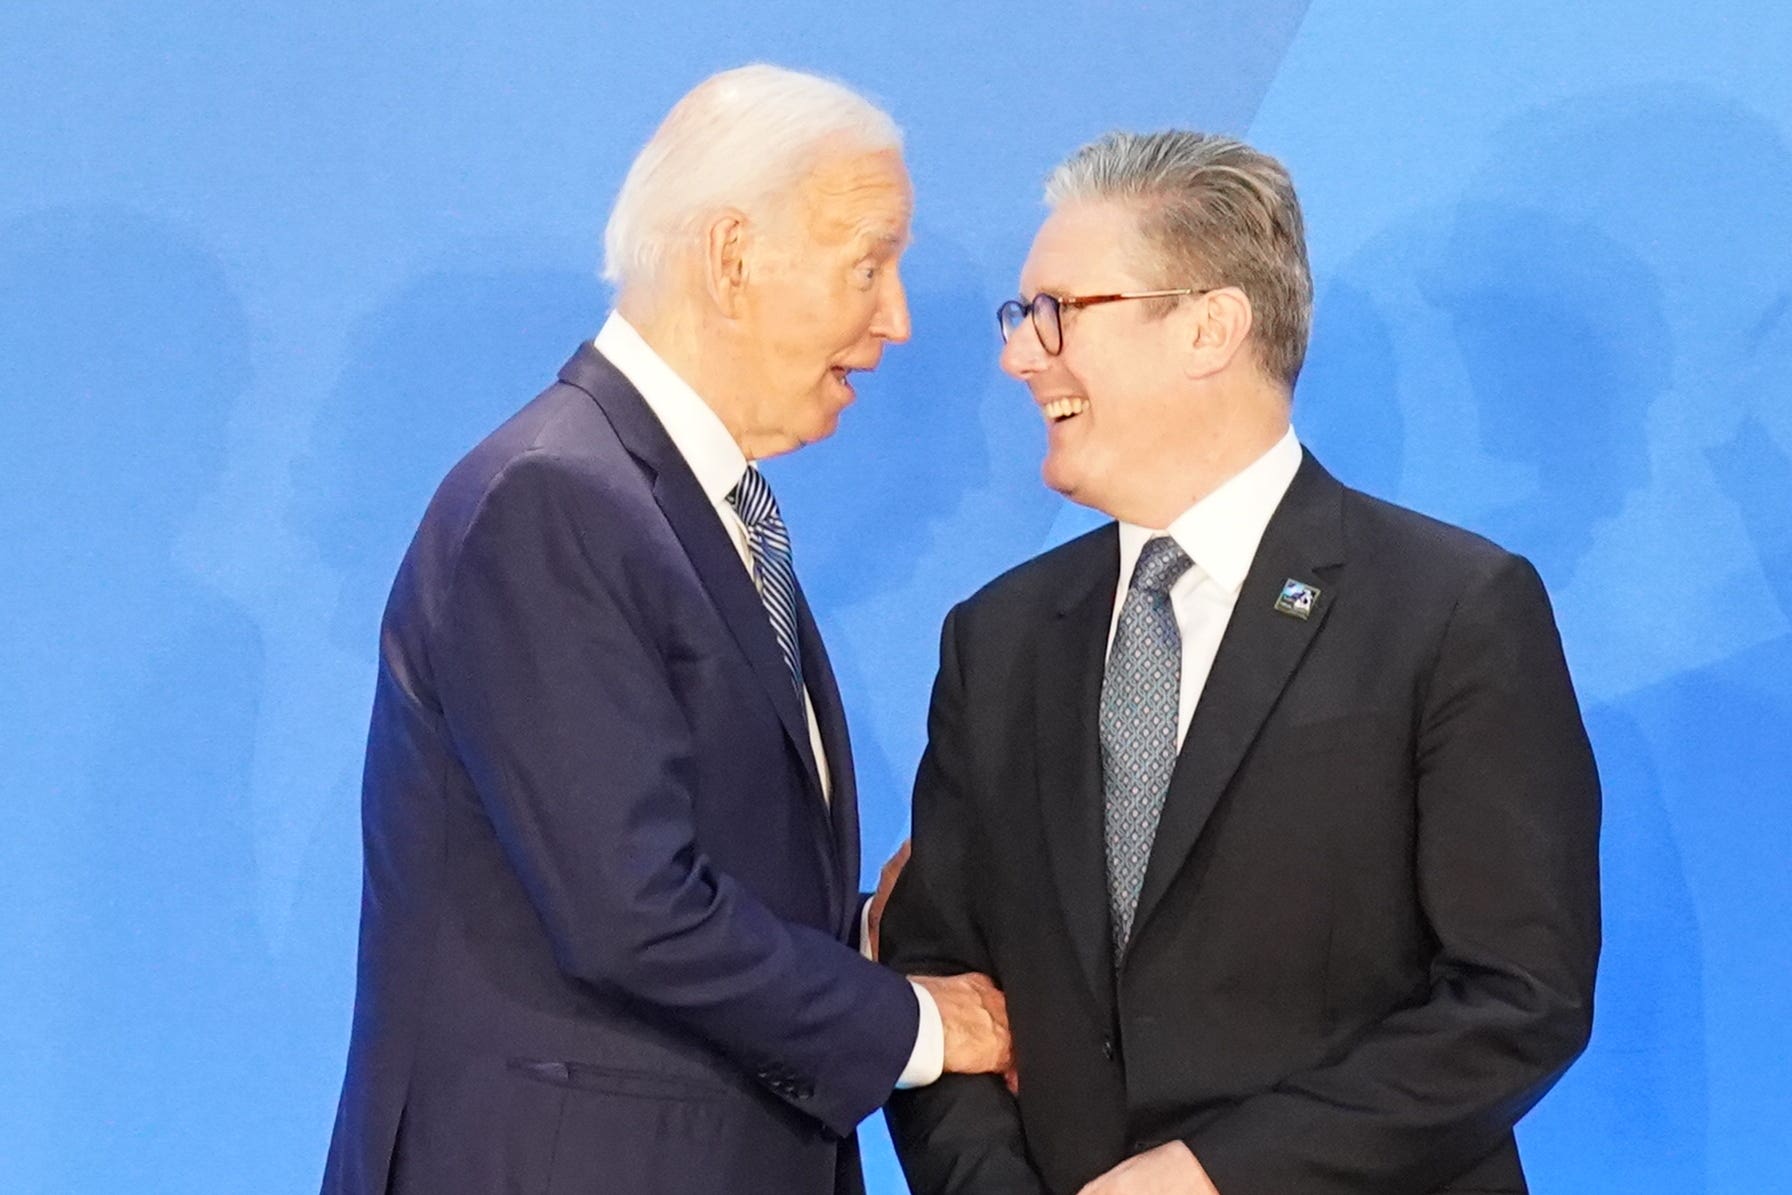 Joe Biden met with Sir Keir Starmer at the NATO summit (Stefan Rousseau/PA)